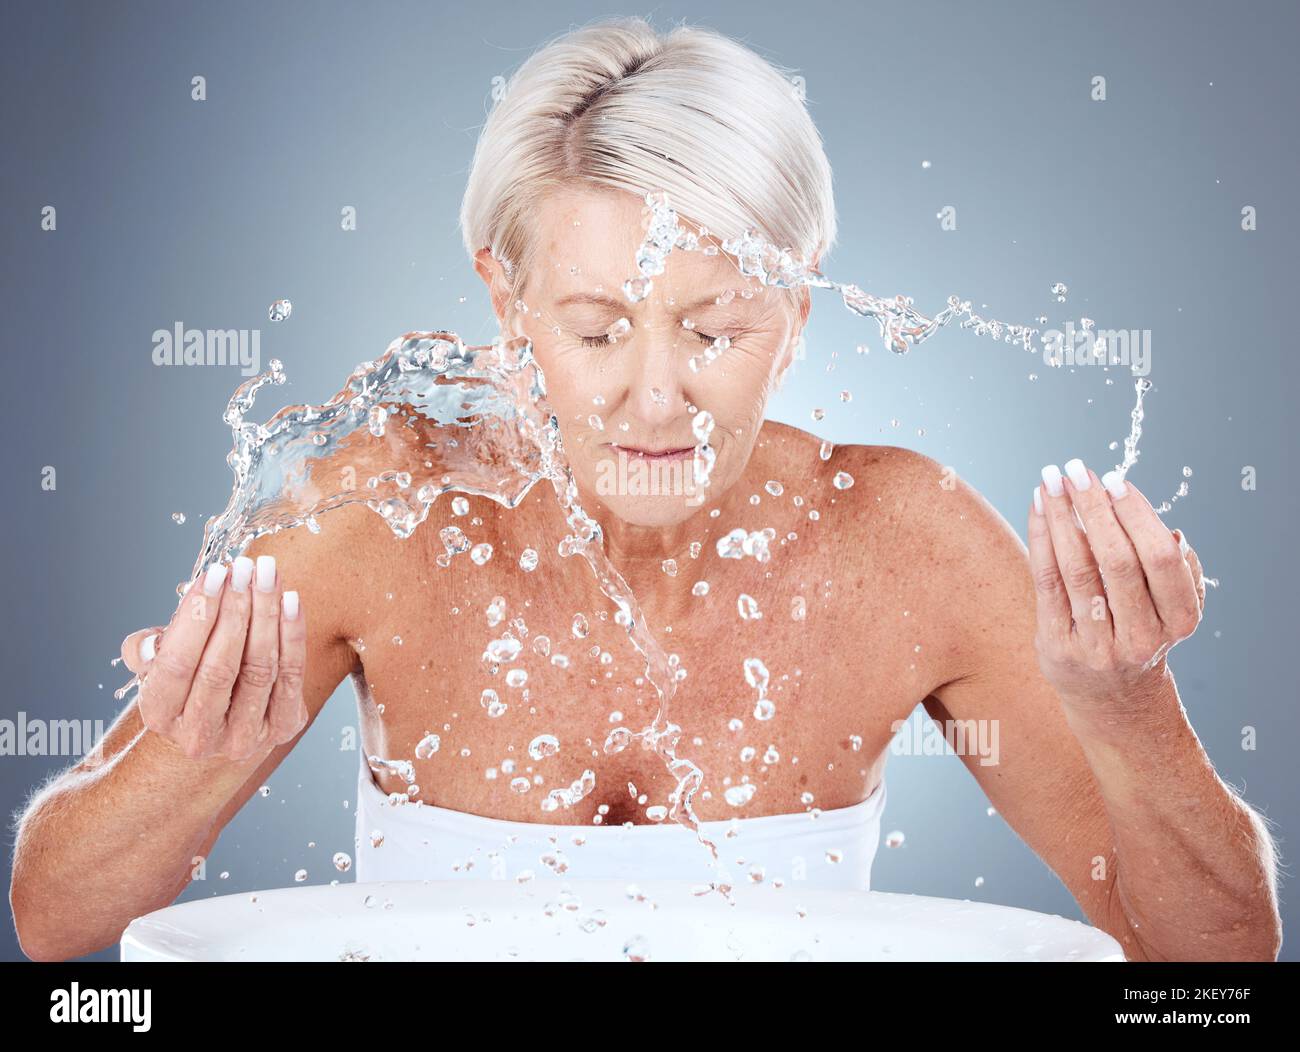 Ältere Frau, Wasserspritzer und Hautpflege mit Reinigung, Wellness und Gesichtswäsche vor grauem Studiohintergrund. Ältere Modelle, Schönheits- und Gesichtsbehandlungen Stockfoto